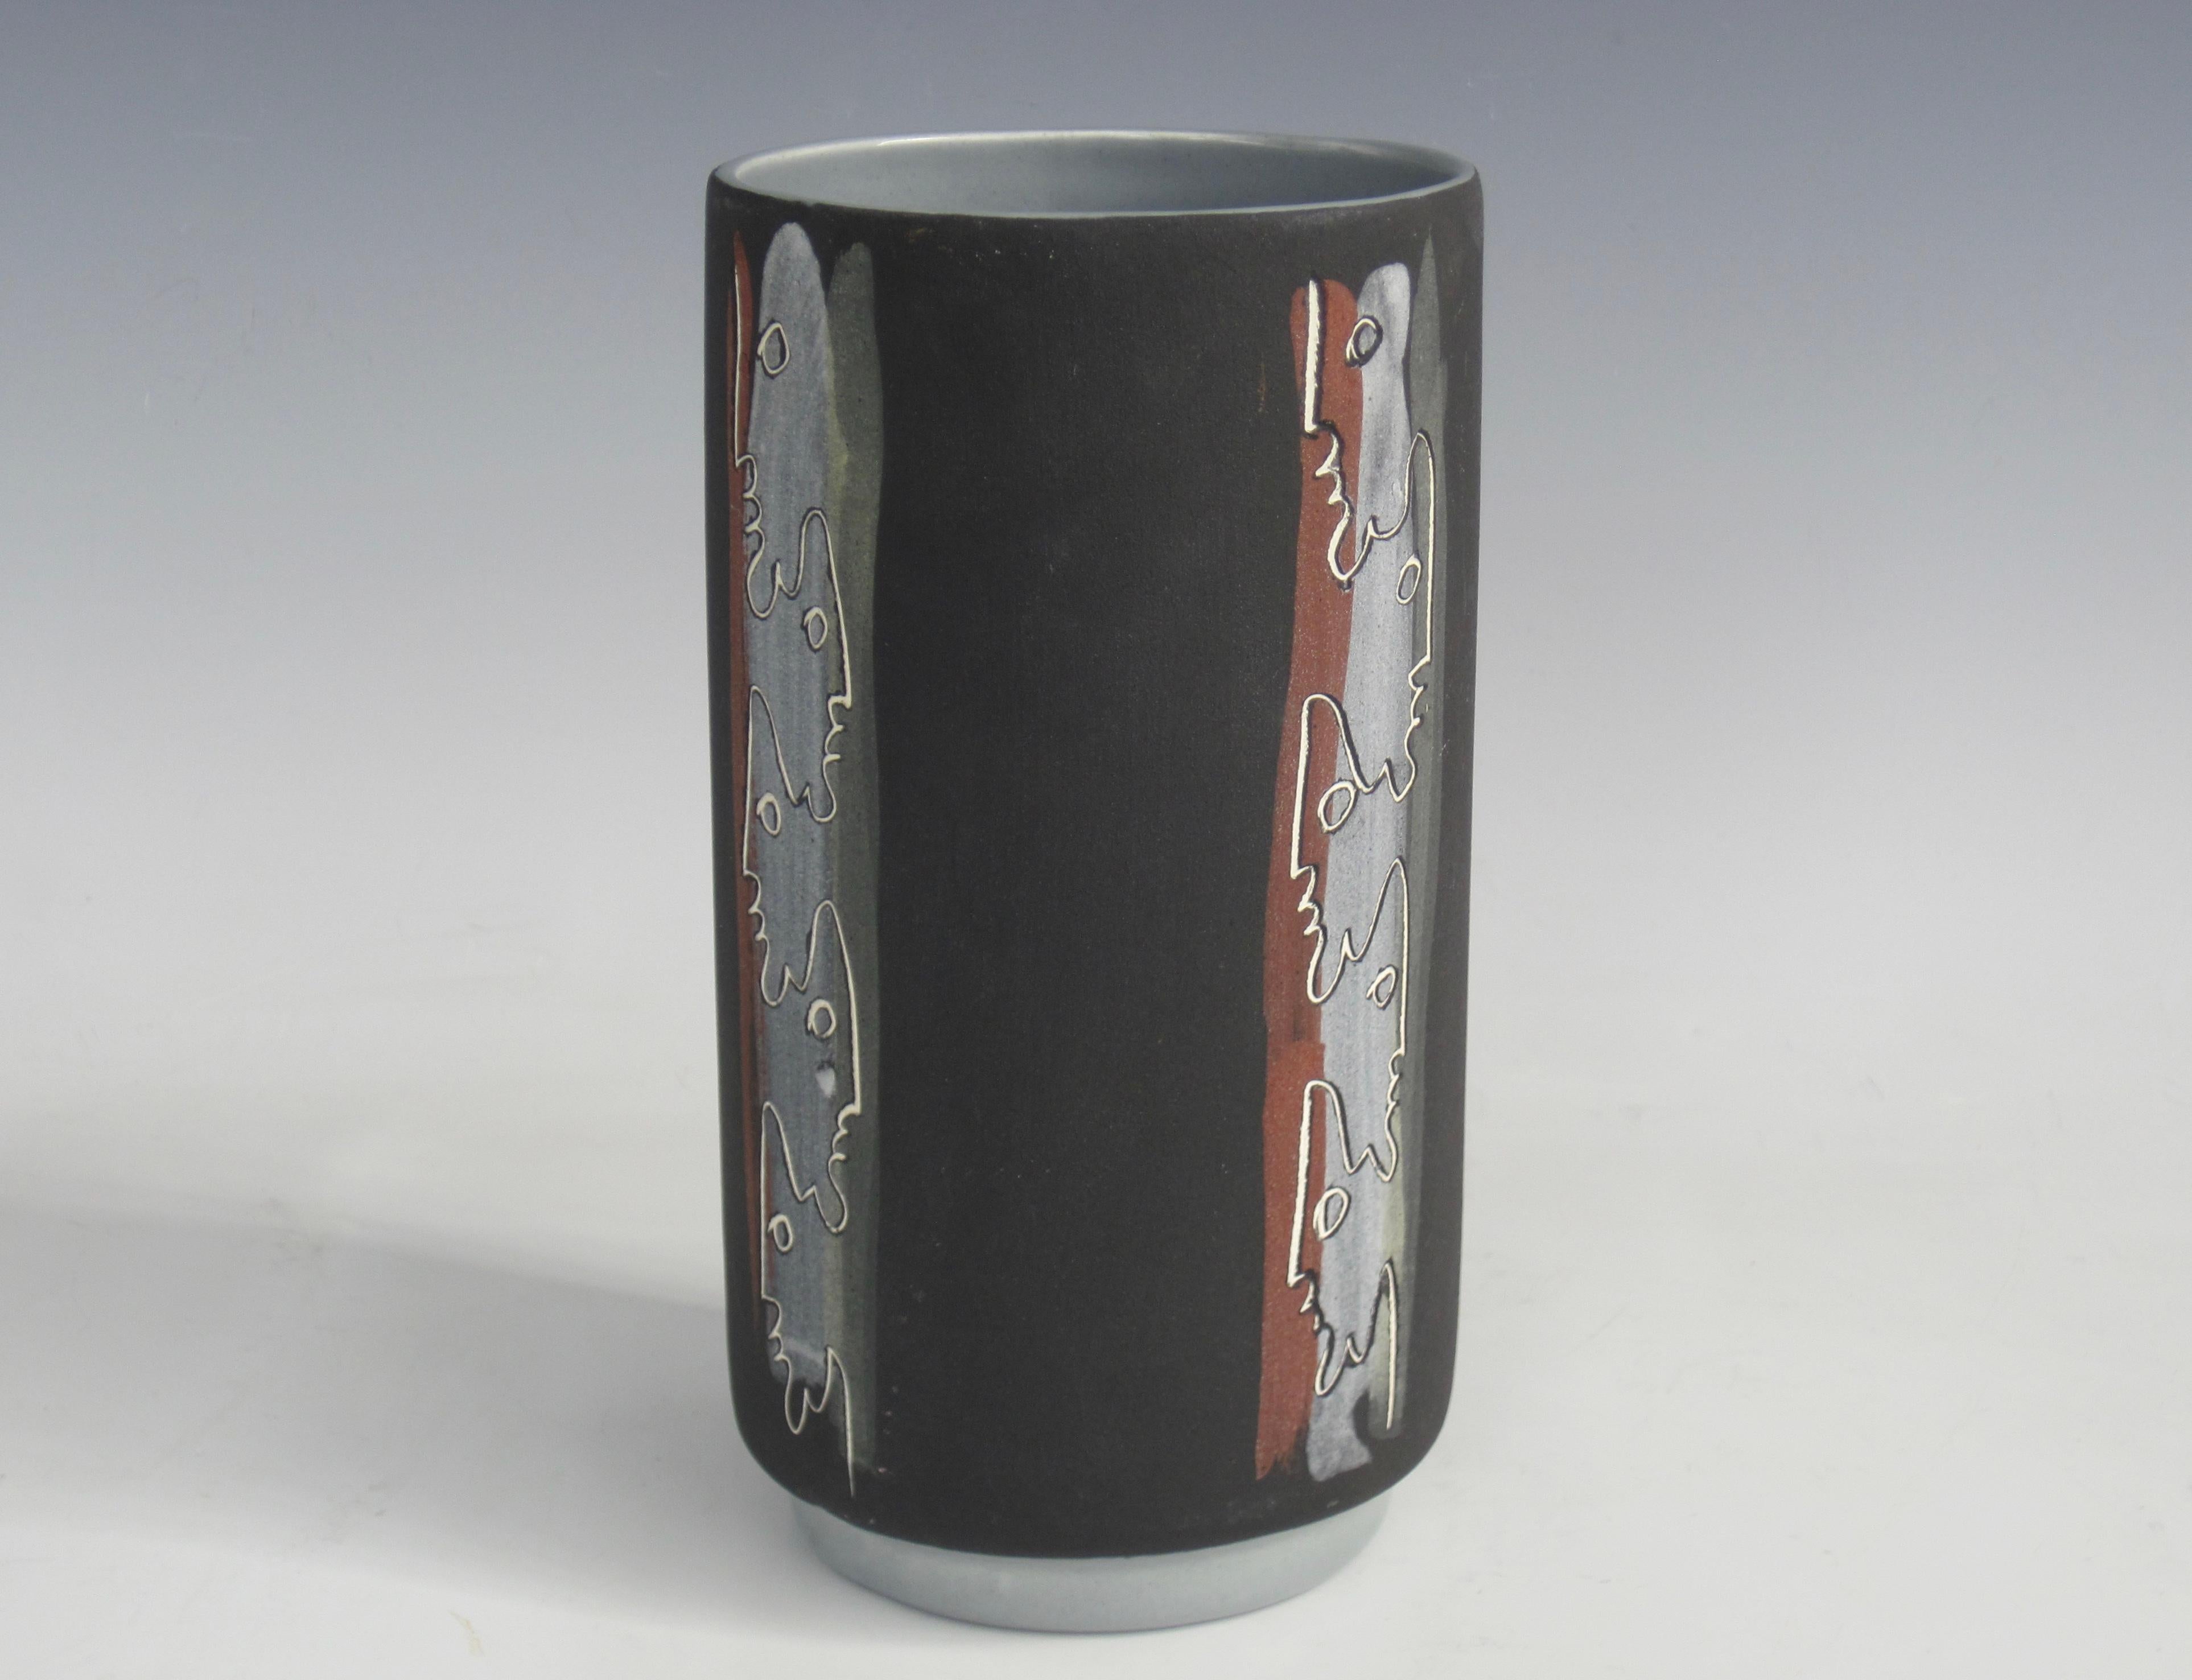 Un vase tiki du milieu du siècle par le duo d'artistes Charles et Alice Smith, connu sous le nom de Chalice. Ce vase présente une alternance de silhouettes de tiki incisées et de rayures verticales rouge brique, gris et vert olive sur un extérieur